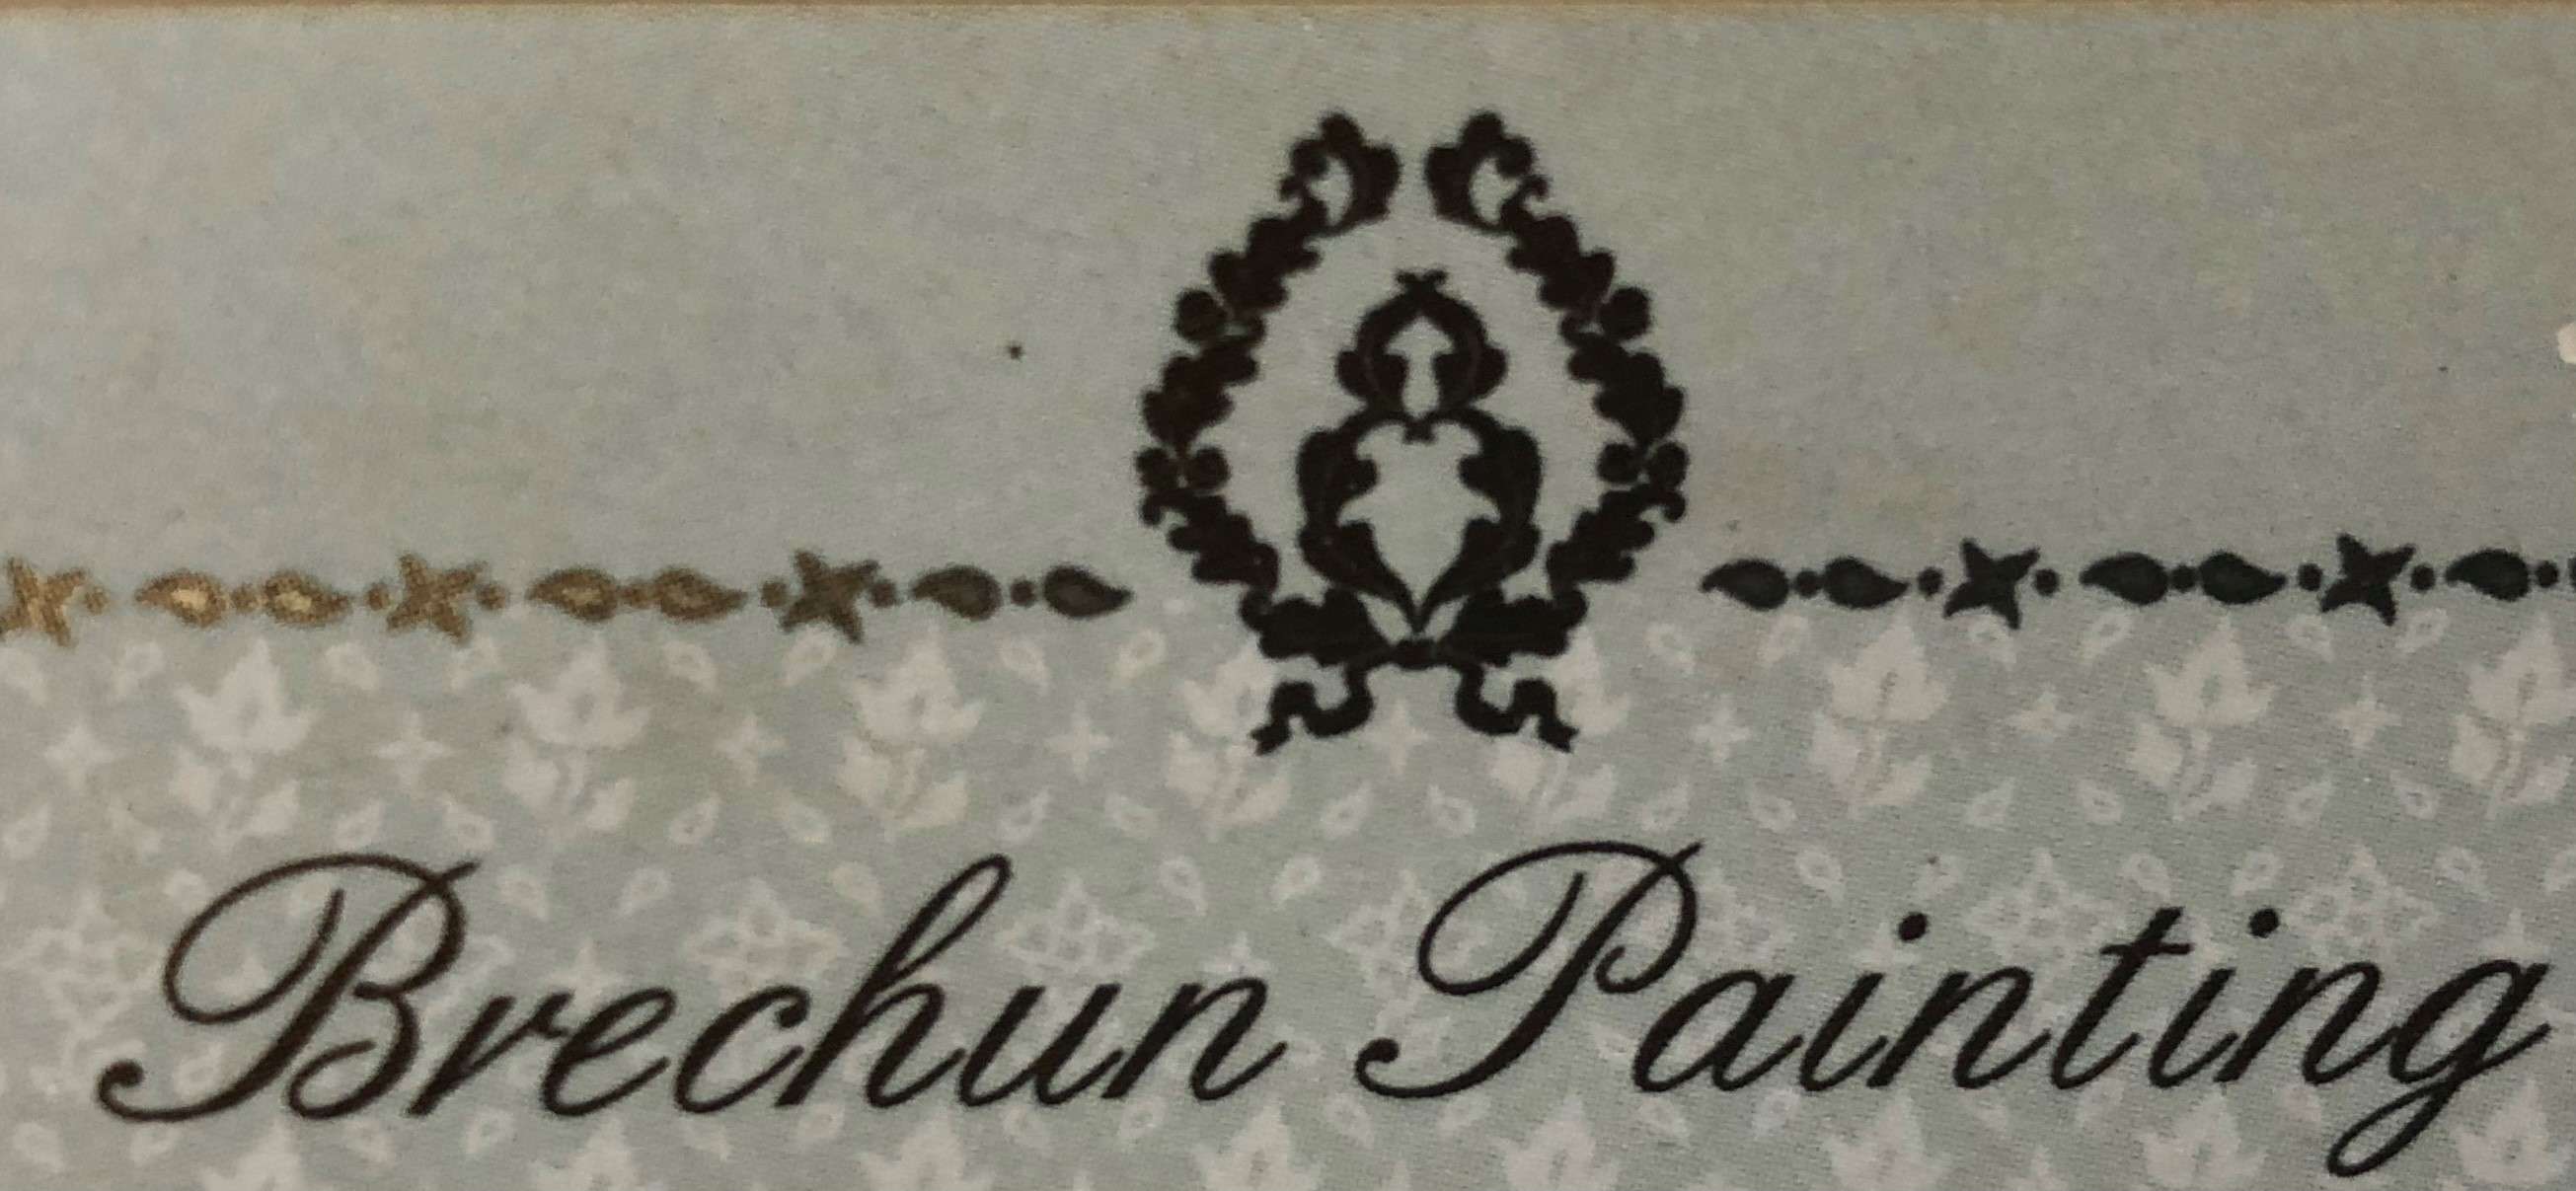 Brechun Painting LLC Logo